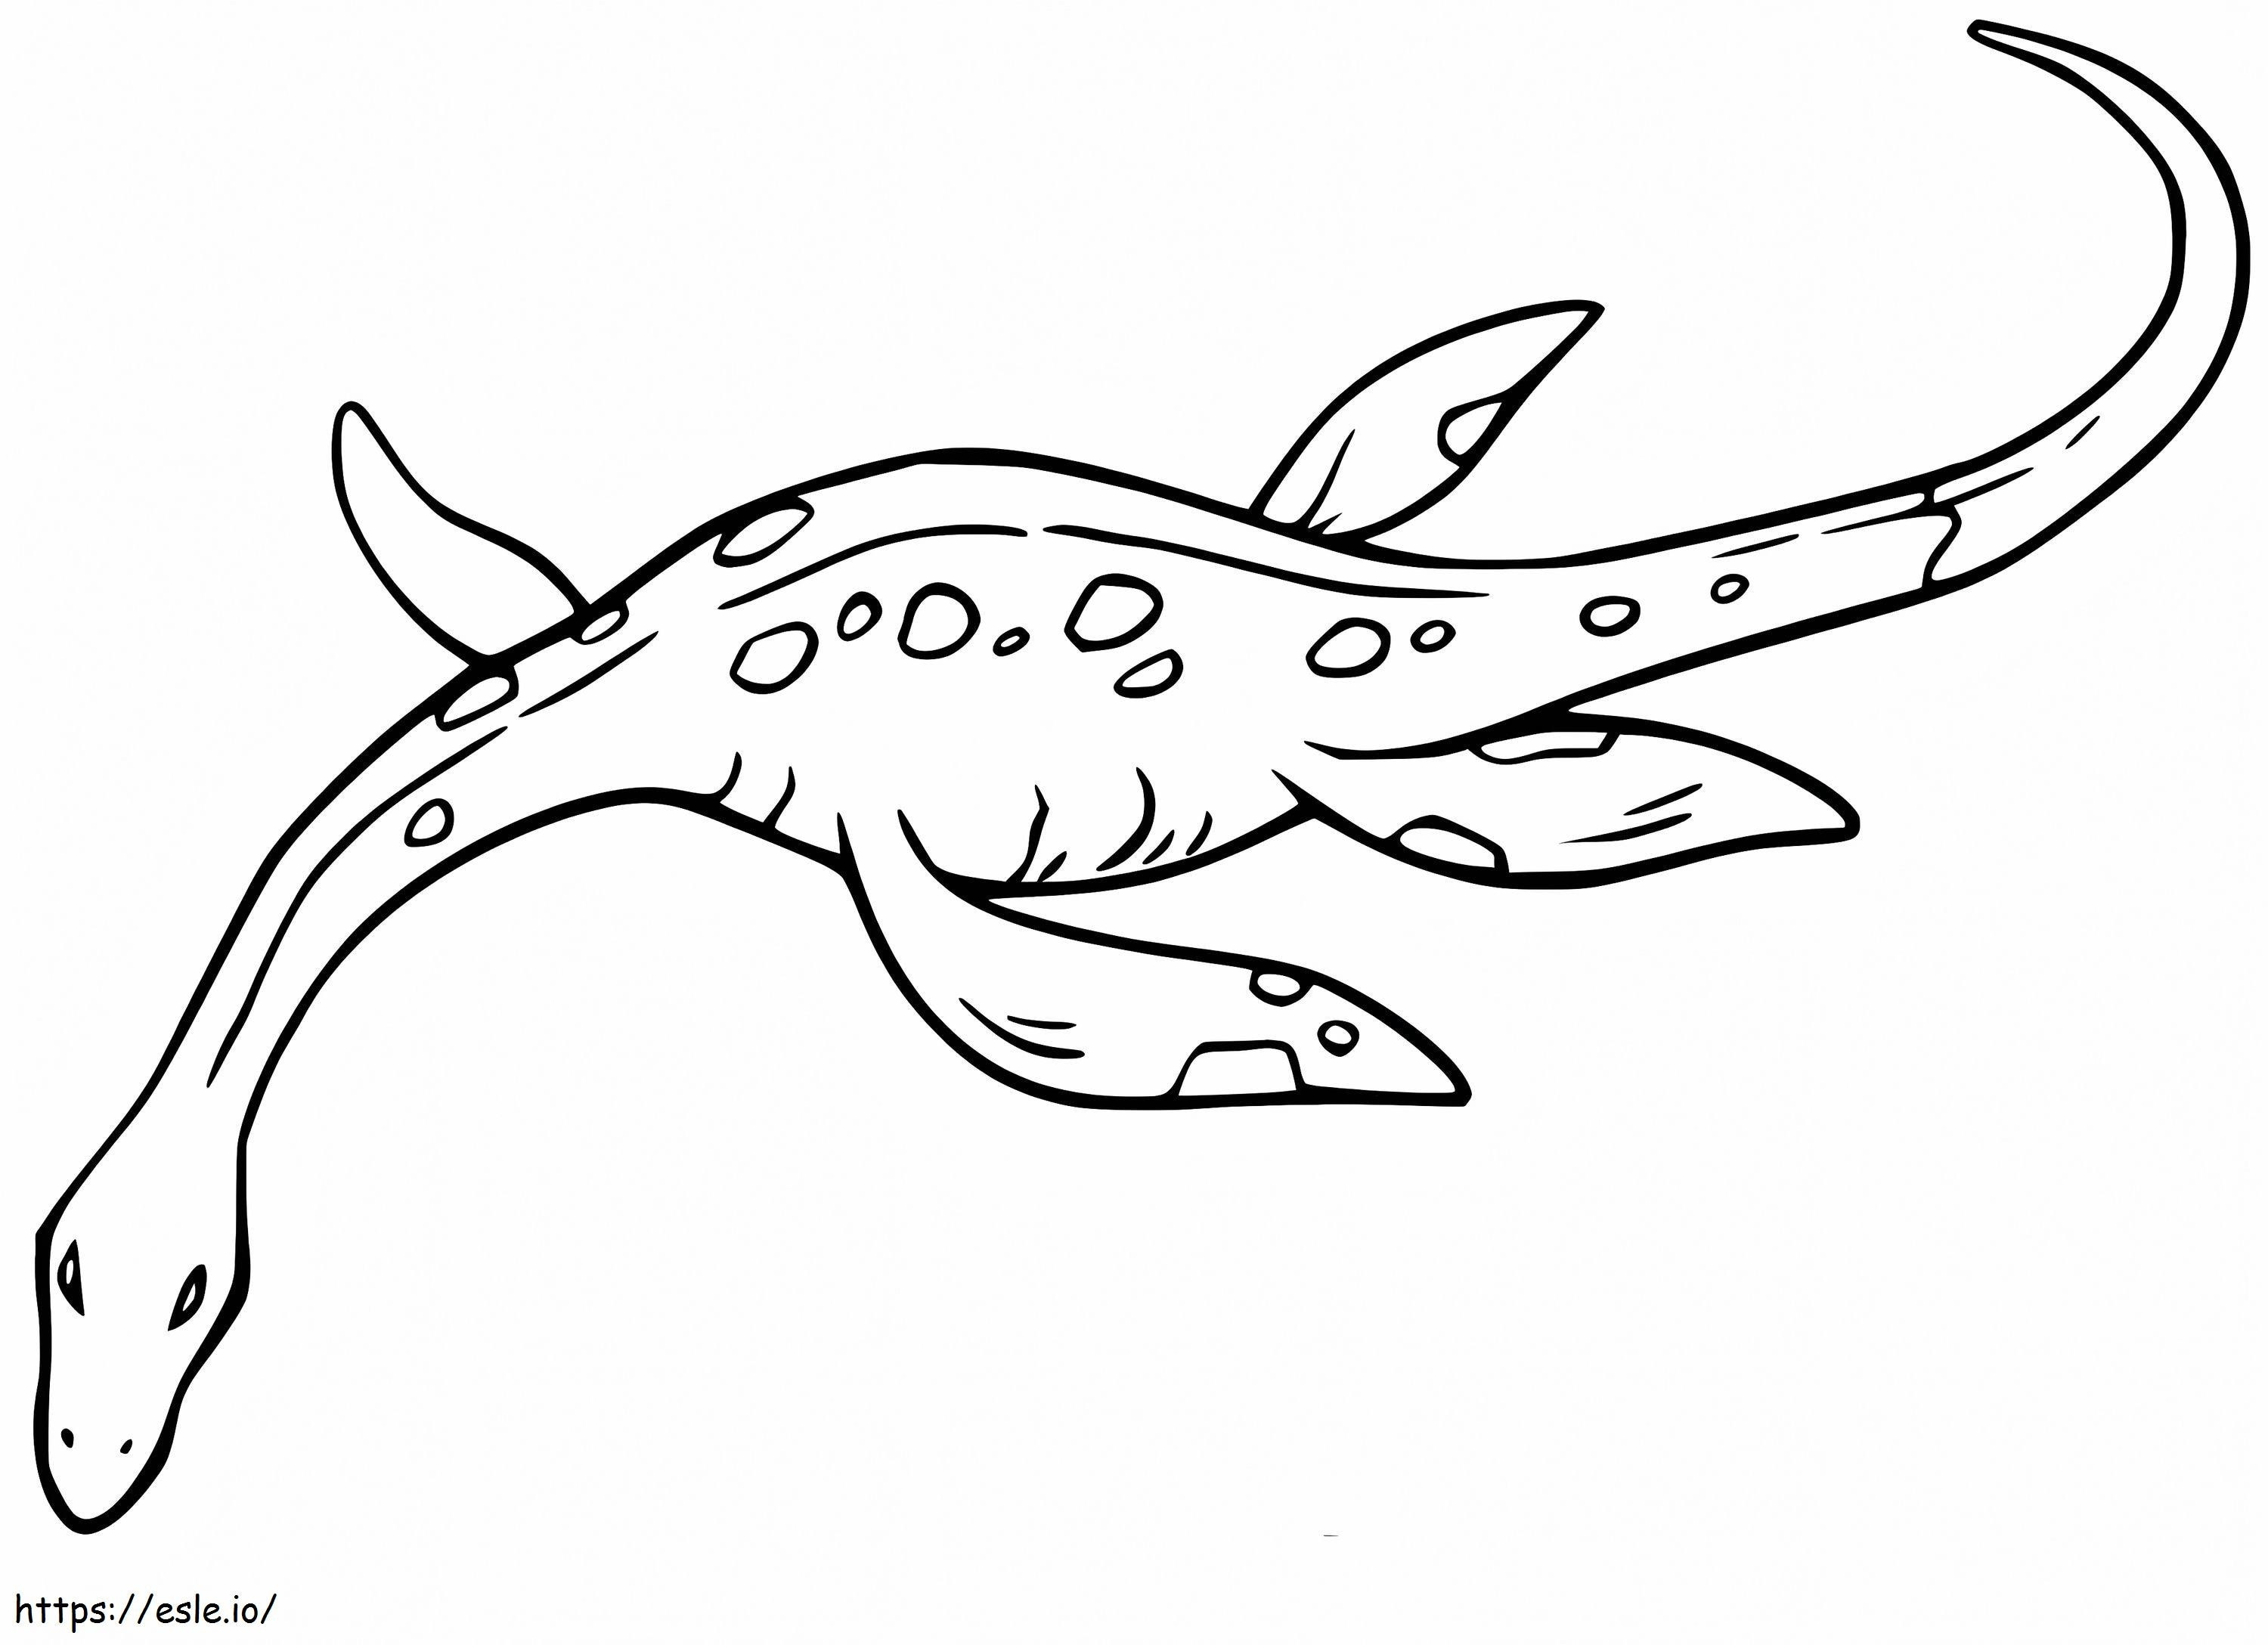 Plesiosaurus úszás kifestő